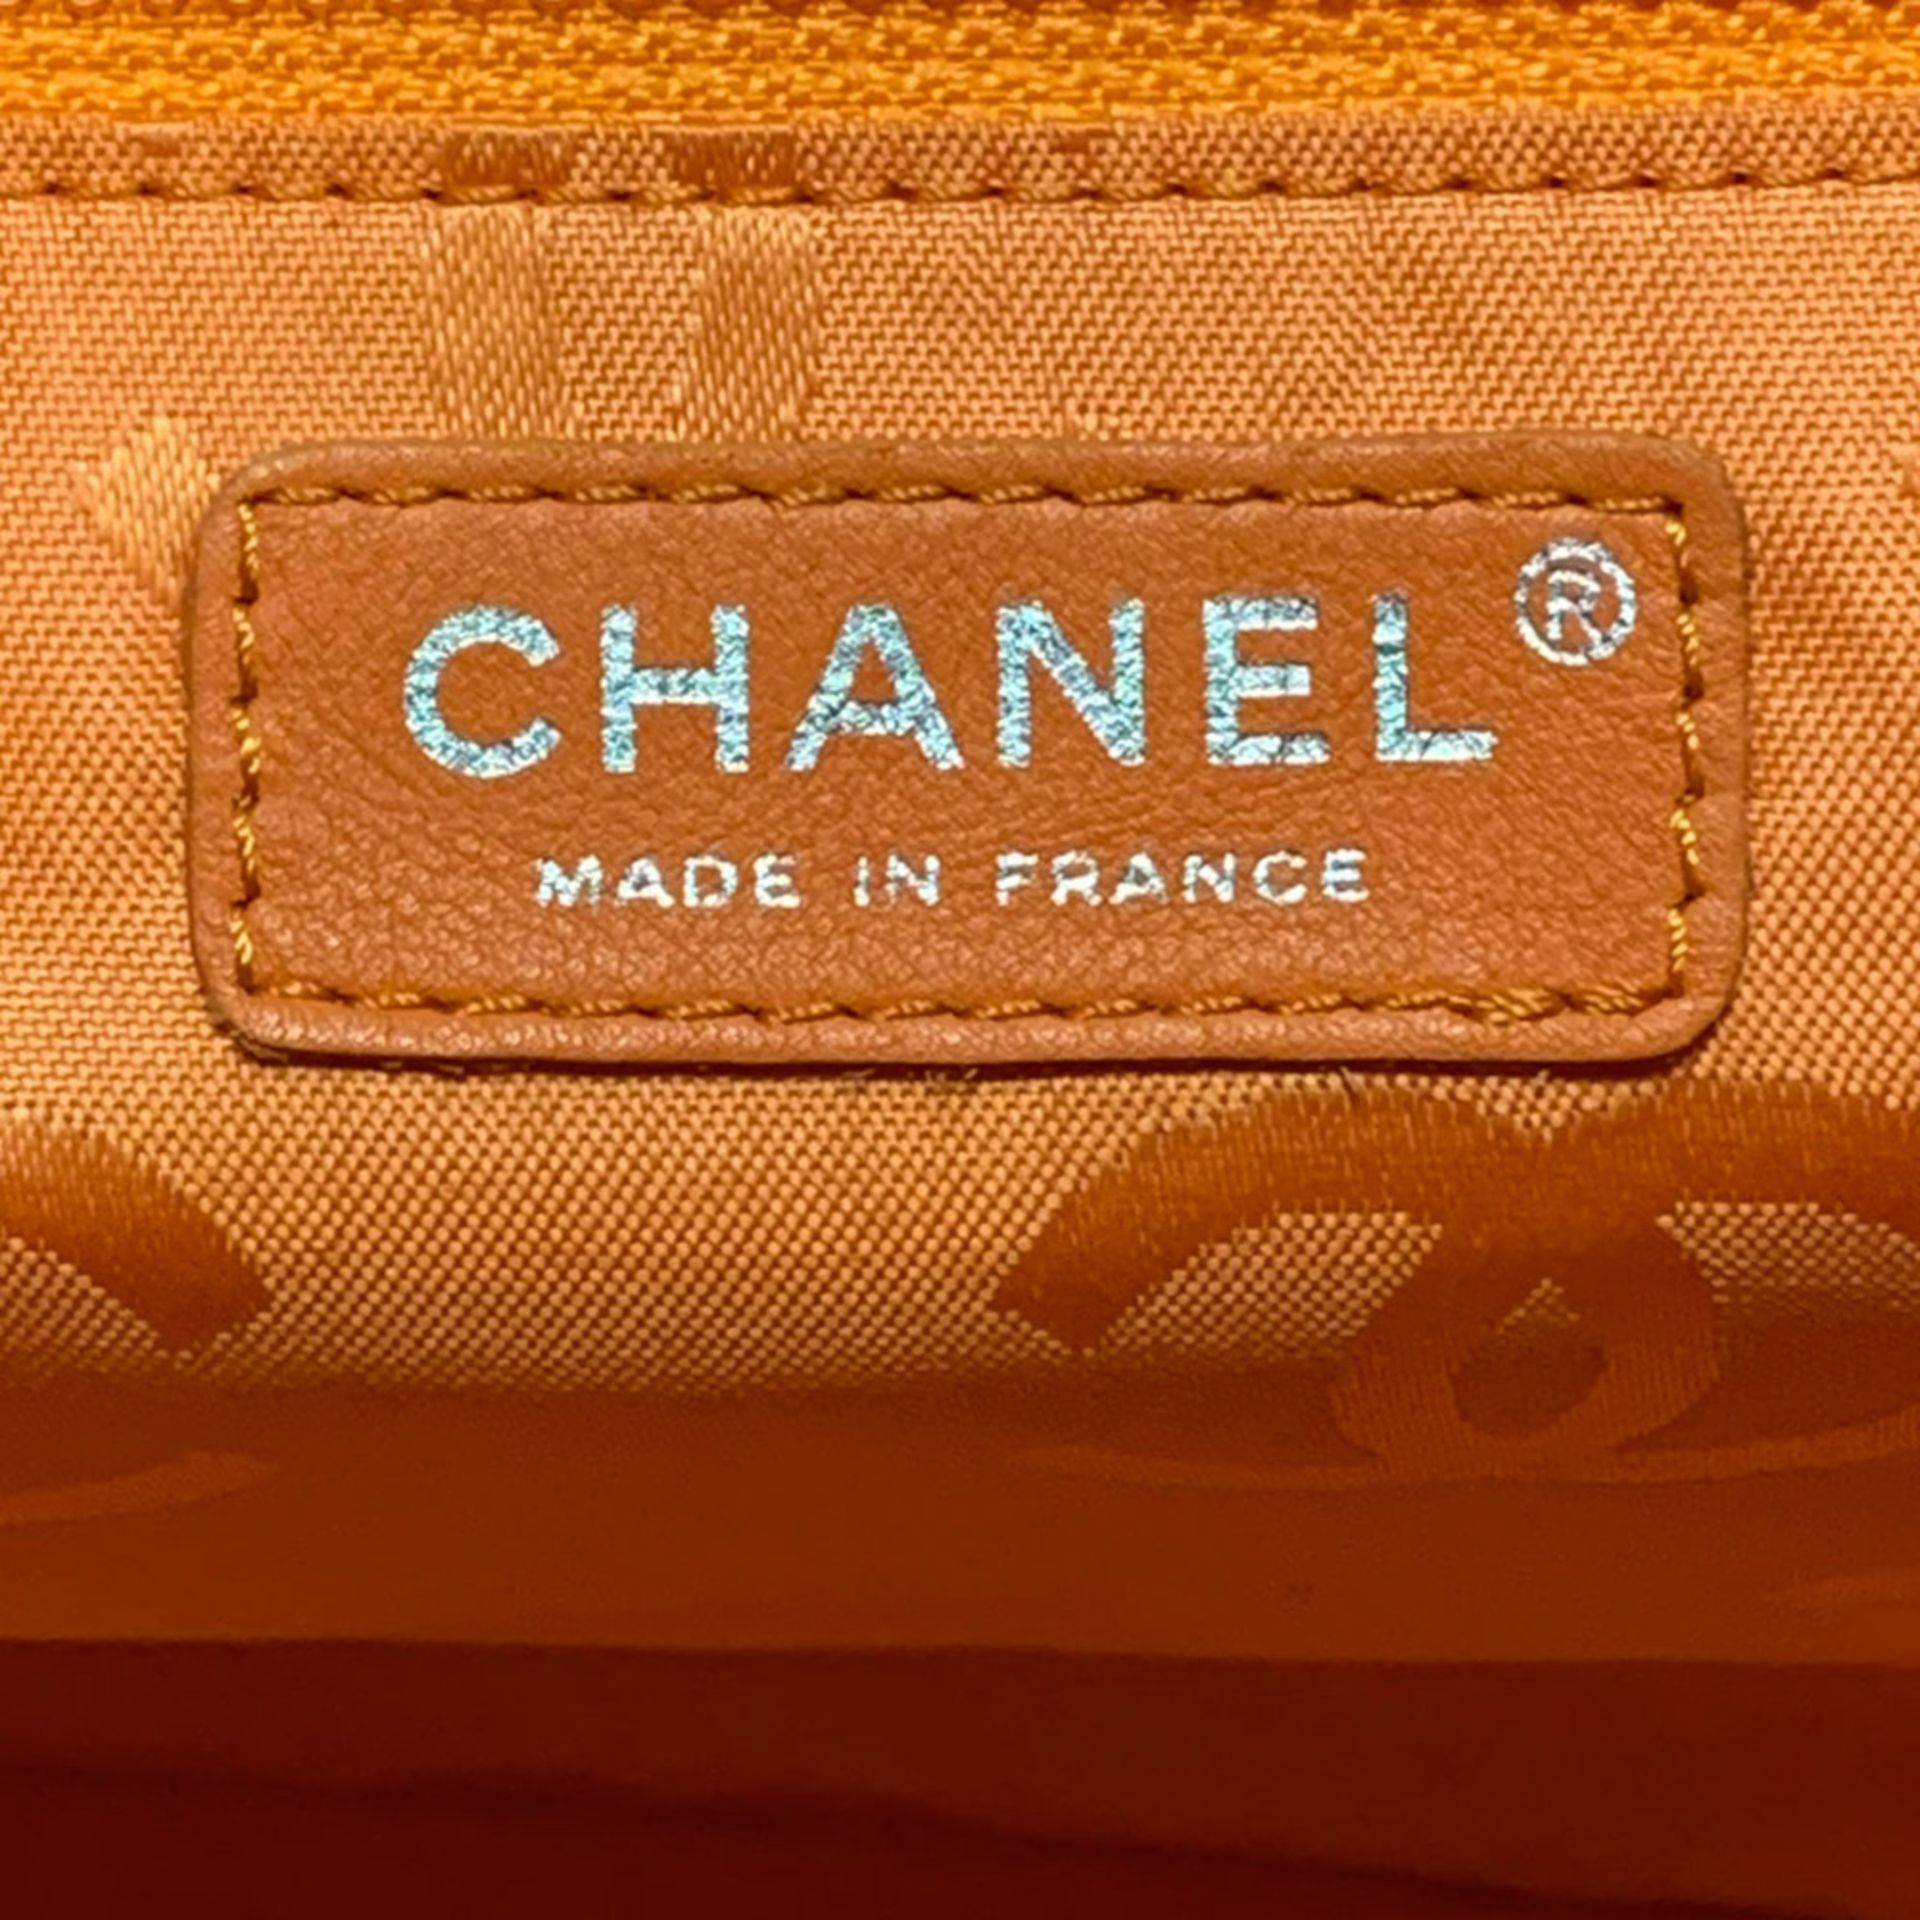 Chanel collezione Cambon Large Python CC, shoulder bag 2000s 30x25x15 cm. - Image 5 of 6